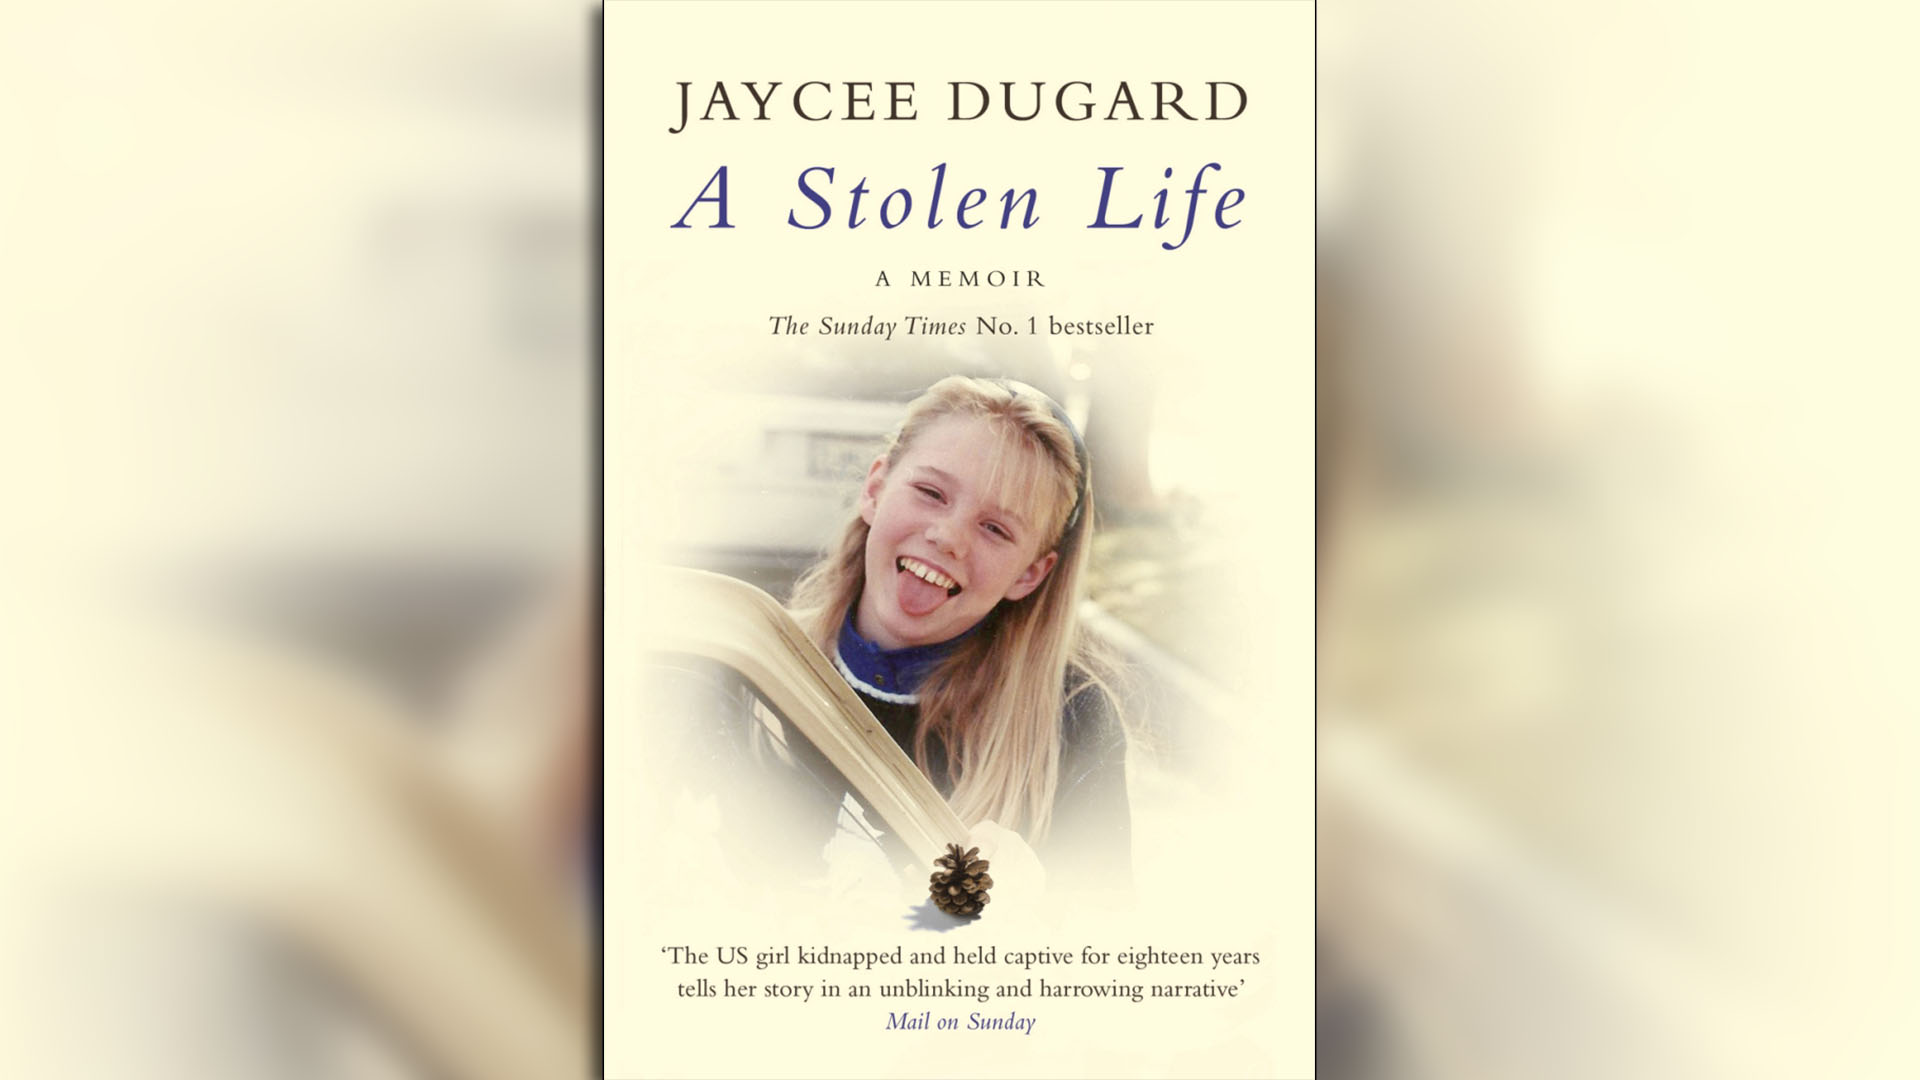 "Una vida robada" (A stolen life) el libro que escribió Jaycee Dugard y relata su calvario de 18 años, en los que estuvo secuestrada por el matrimonio Garrido y violada por el marido, Phillip